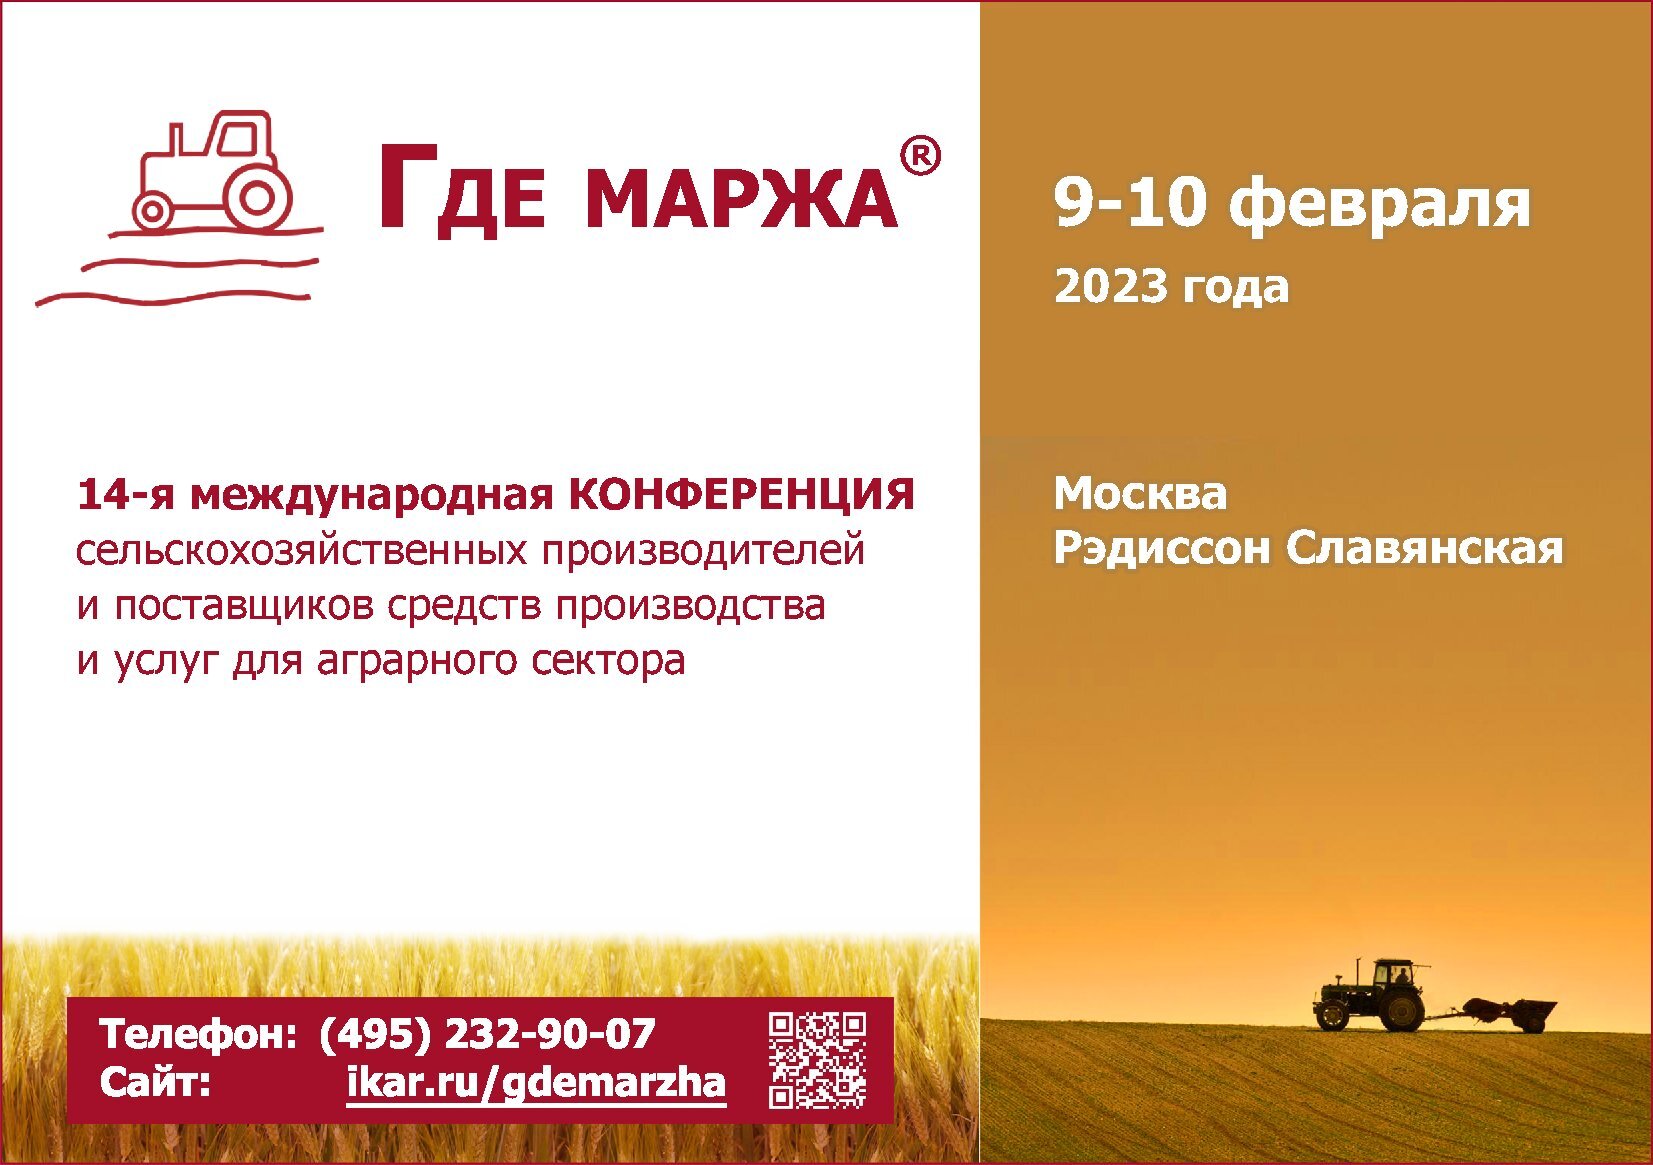 ИКАР приглашает 09-10 февраля в Москву на XIV международную аграрную конференцию ГДЕ МАРЖА 2023